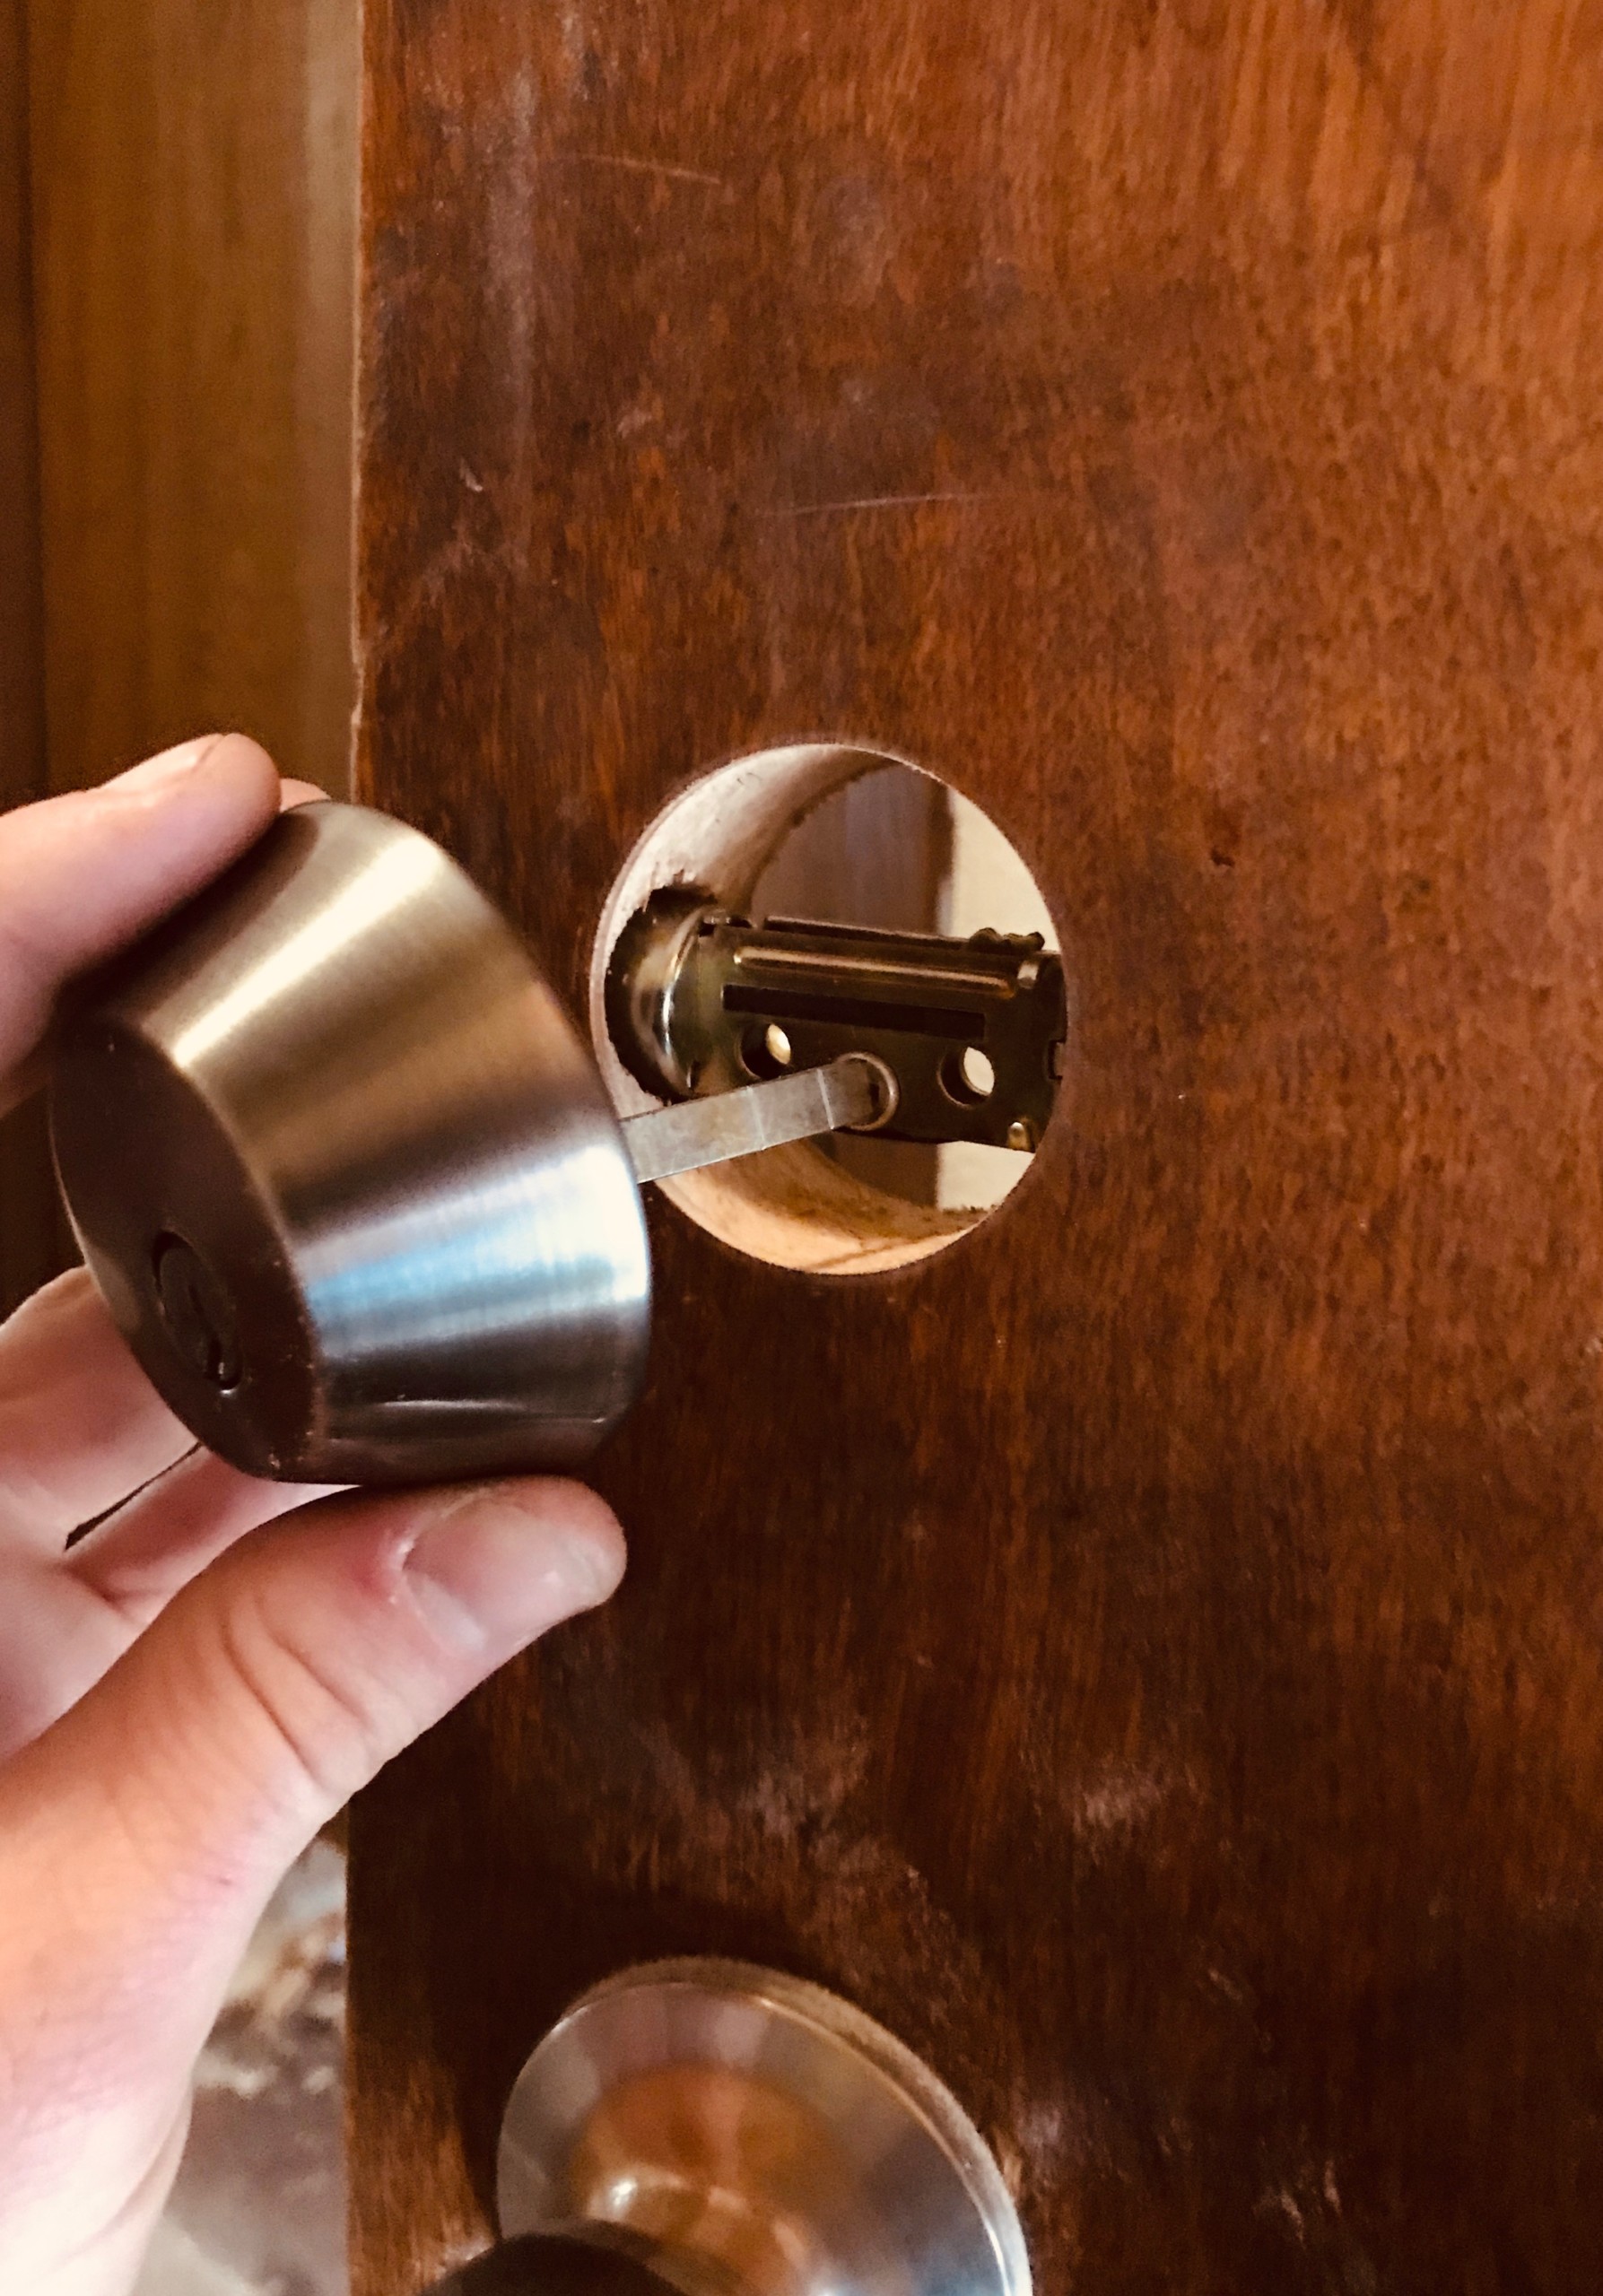 A hand installing a deadbolt onto a wooden door.